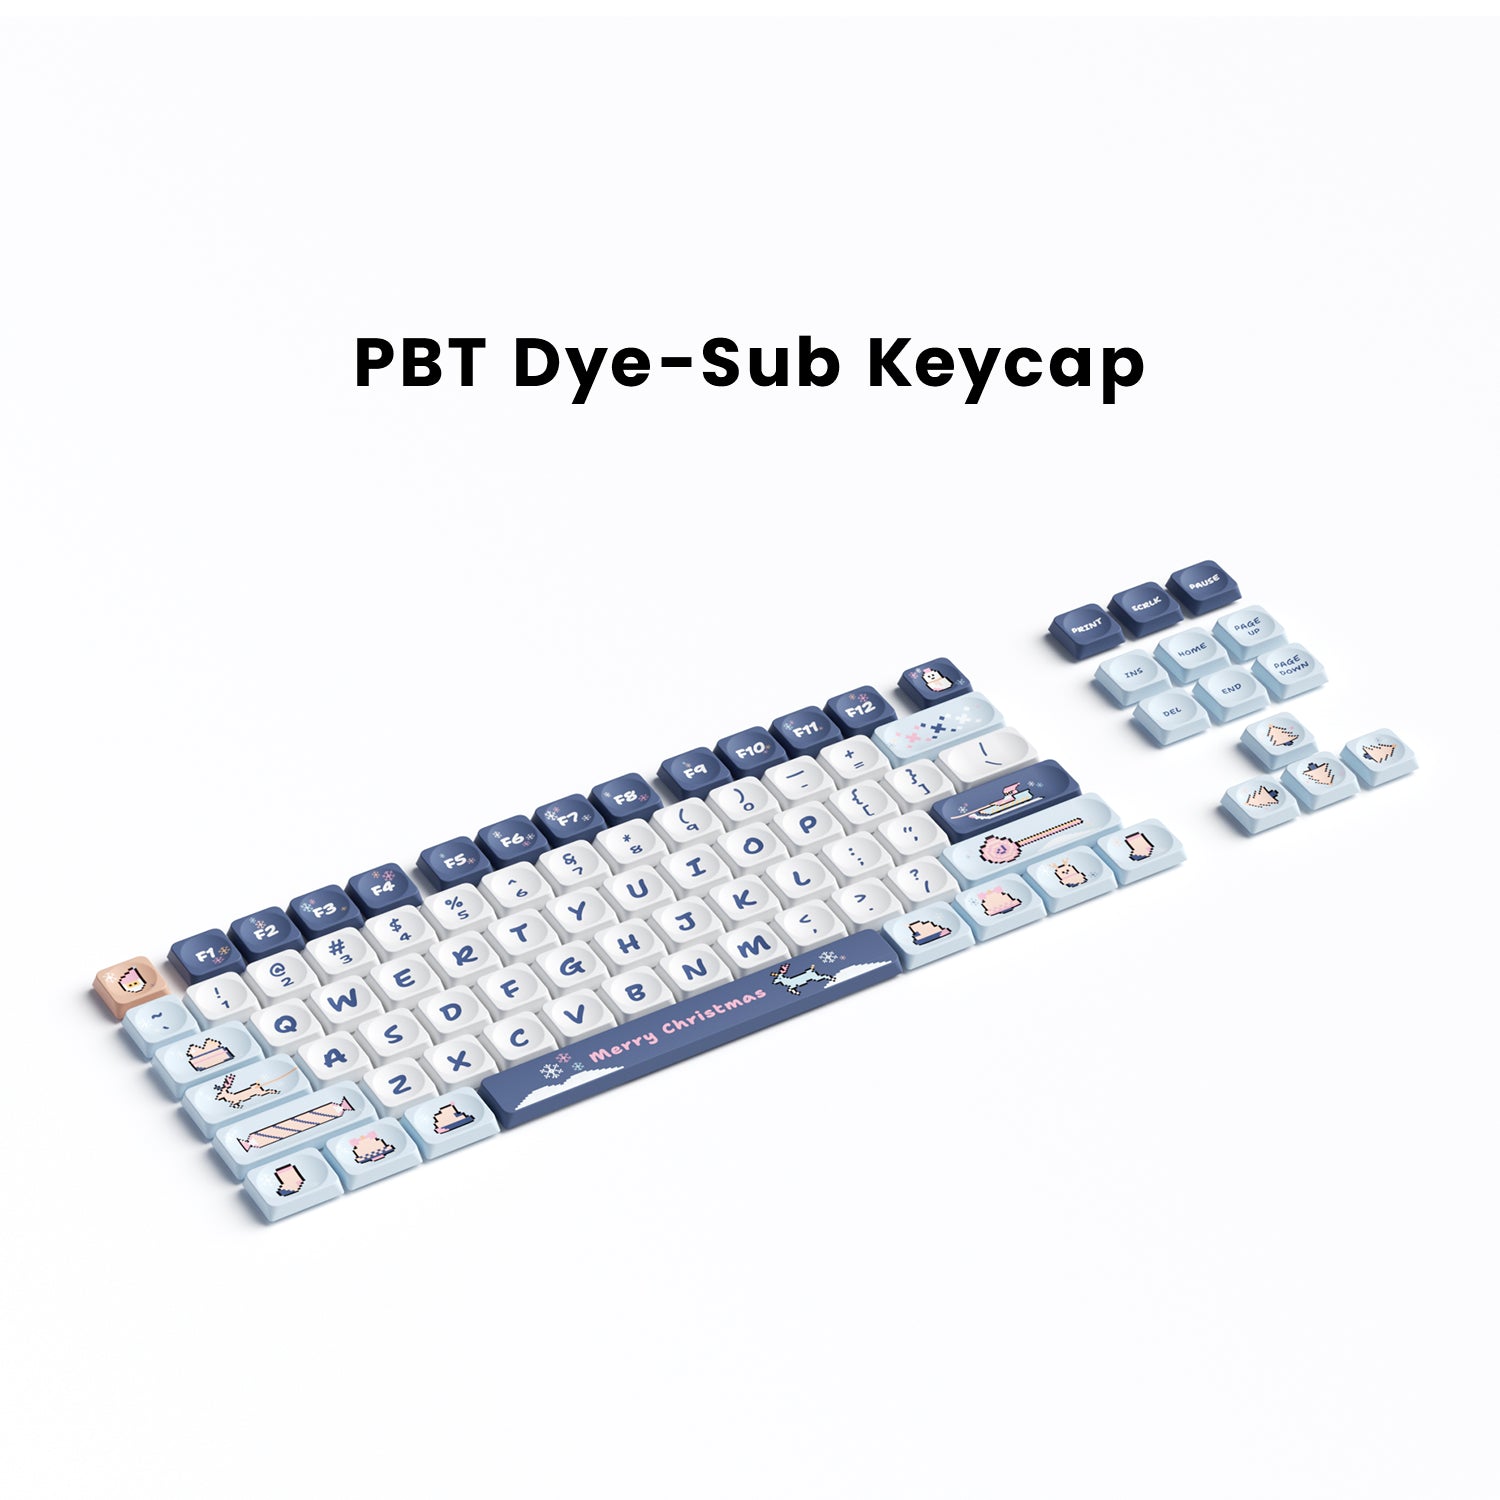 Pixel Keycap Set-Xmas